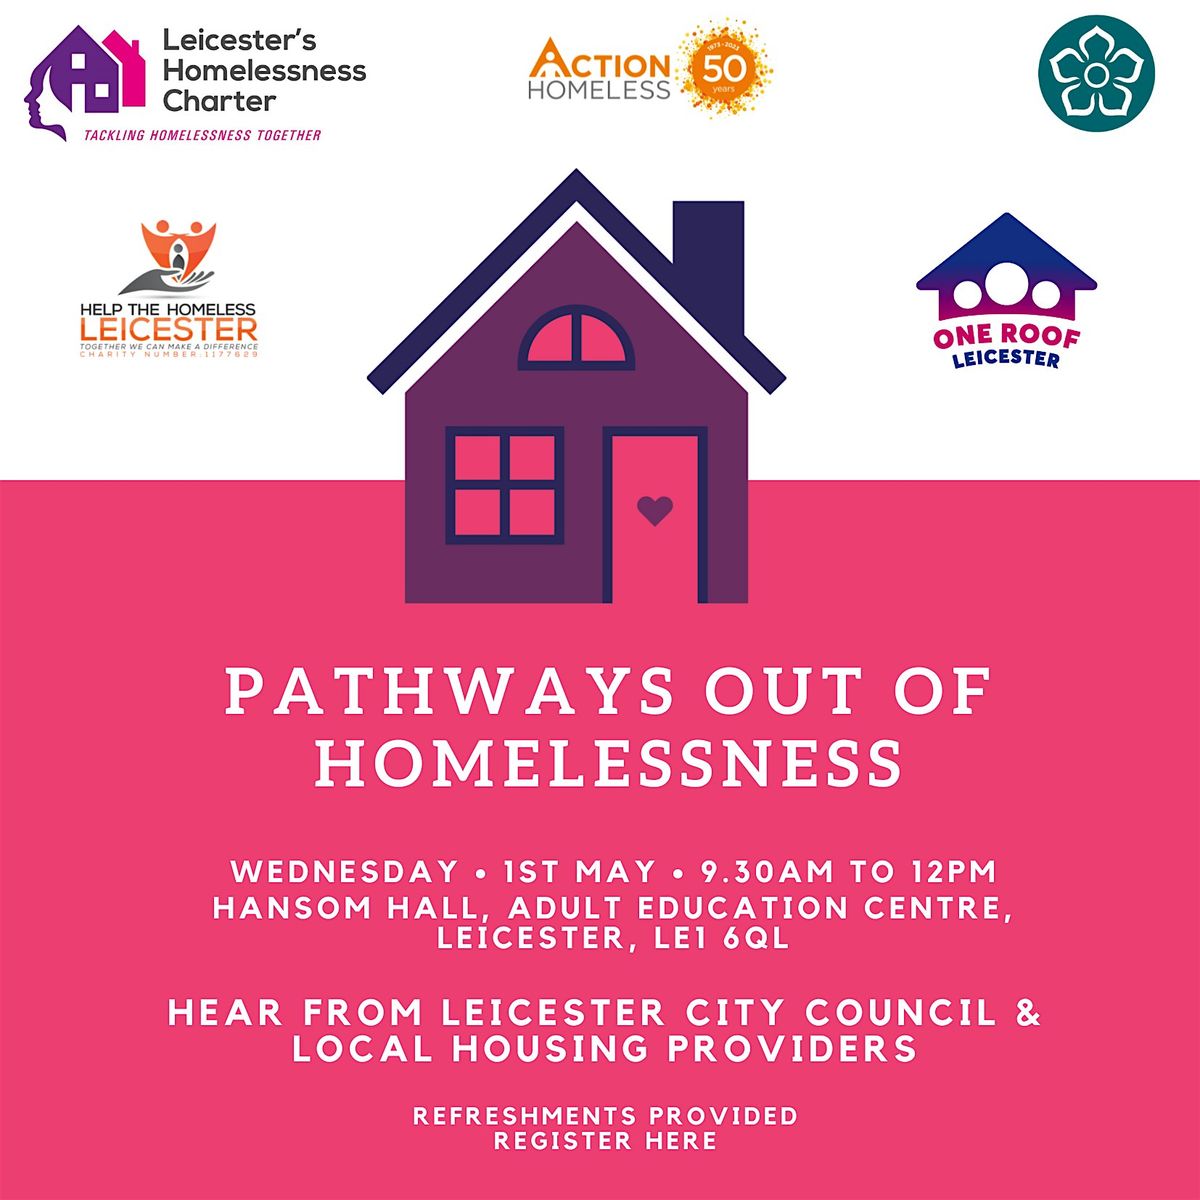 Leicester's Homelessness Charter Development Morning: Housing